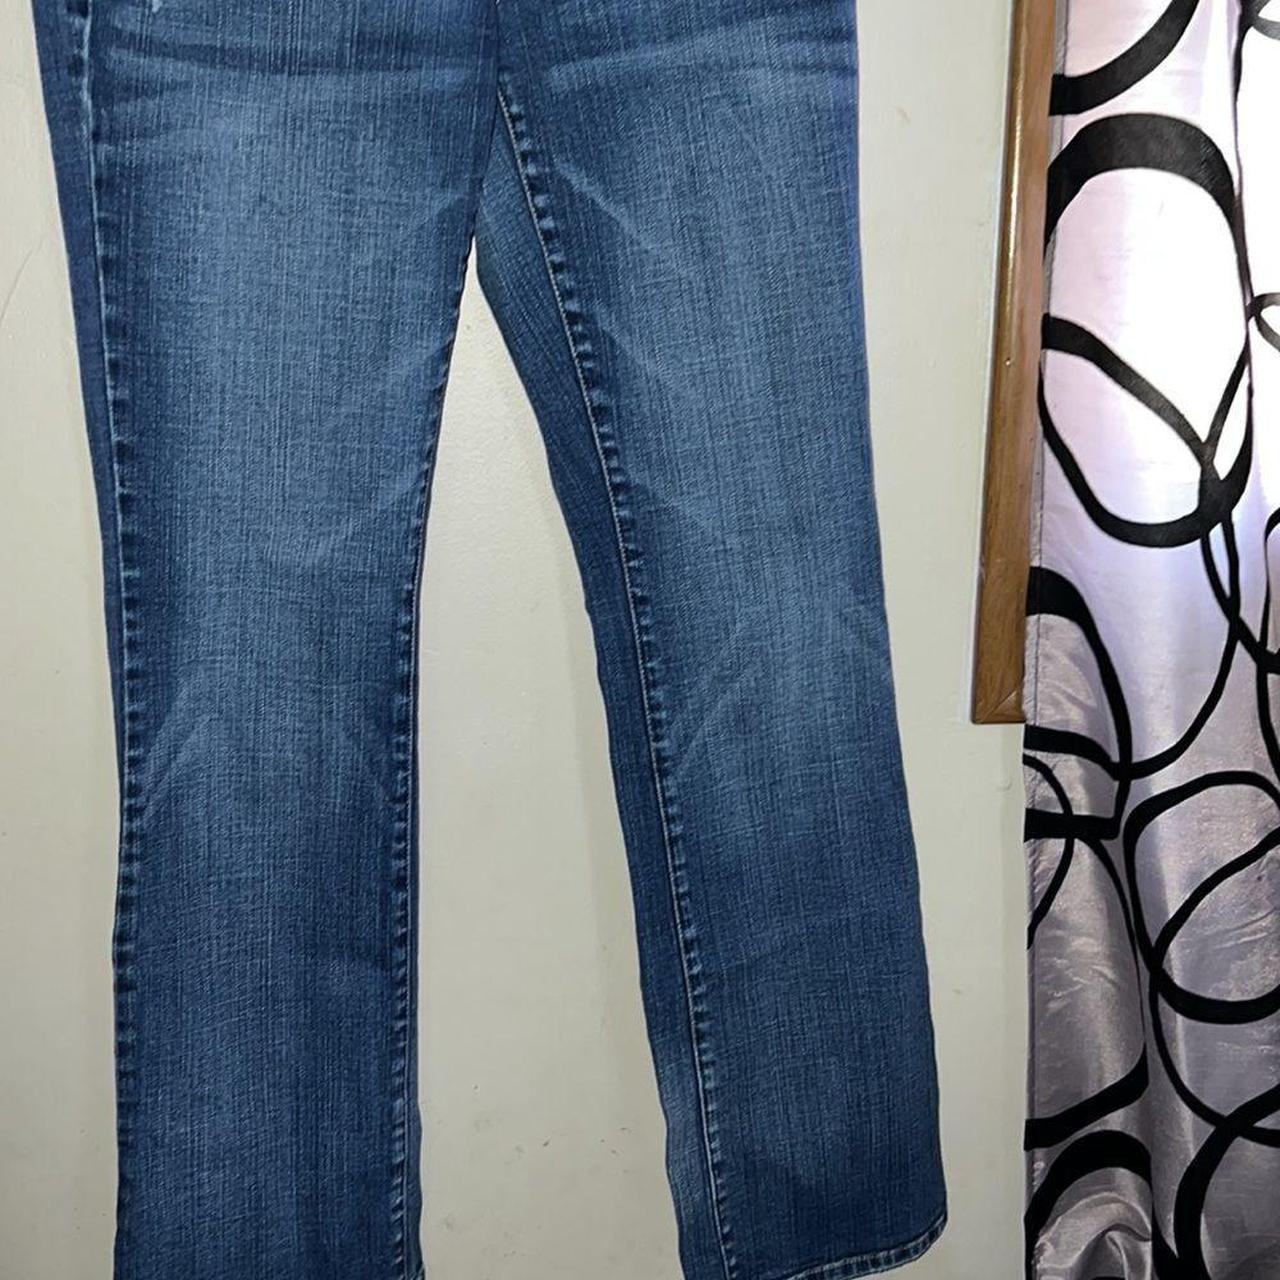 AéRopostale Chelsea boot cut jeans size 7/8, slight... - Depop